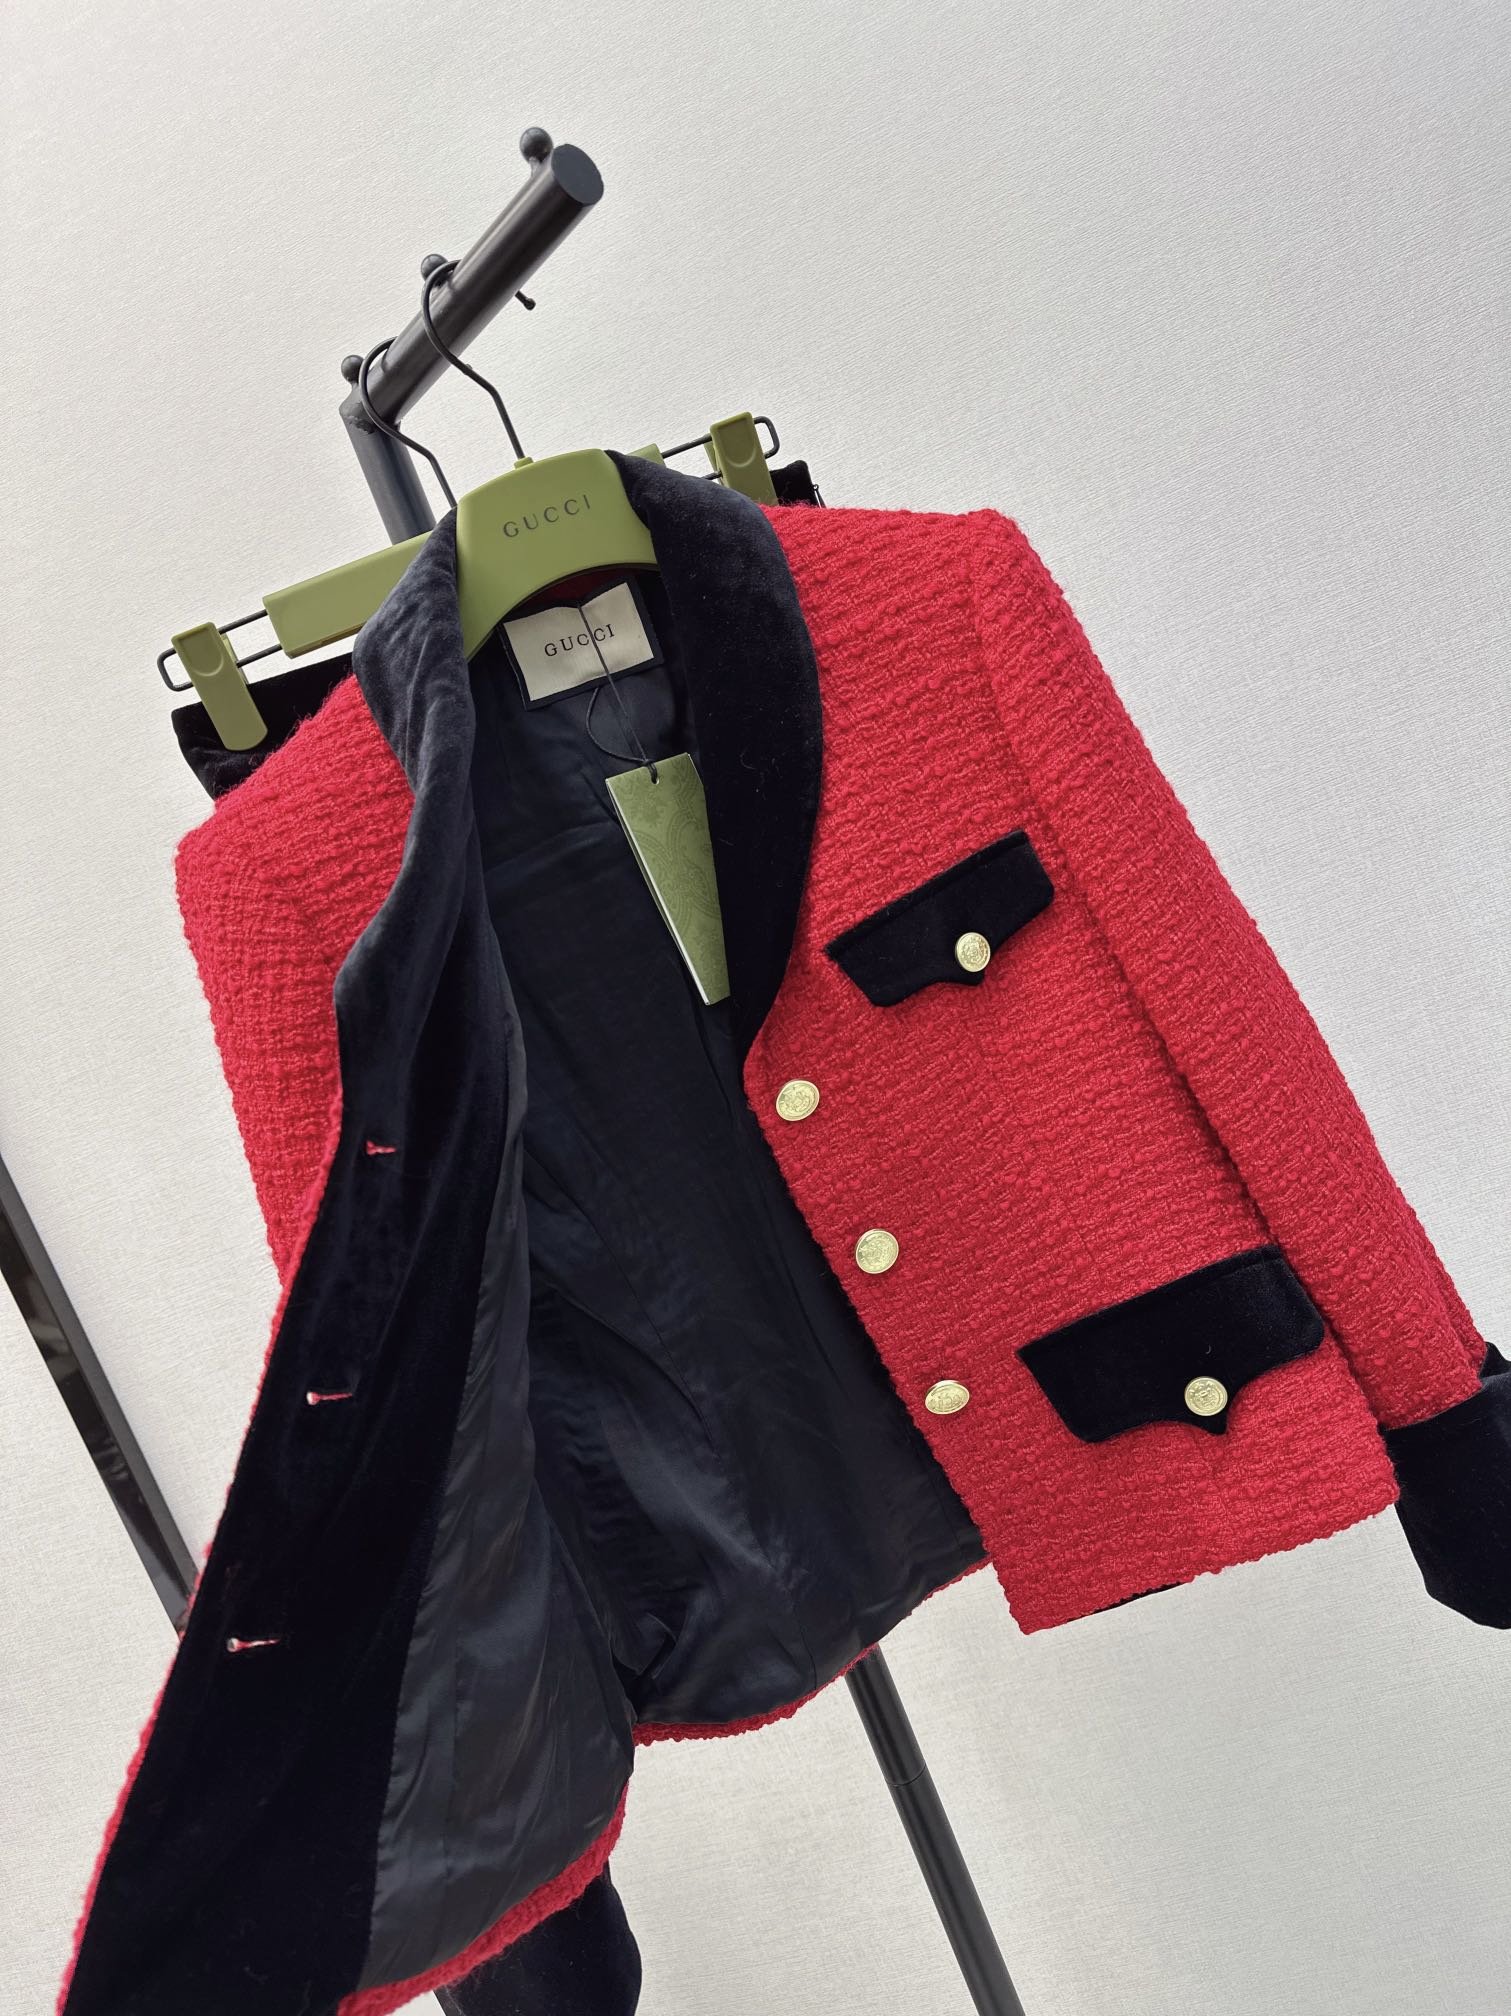 过年战衣Gu24Ss早春最新款复古红编织套装️丝绒撞色镶边编织外套+包臀半裙复古红很显白黑色镶边设计非常